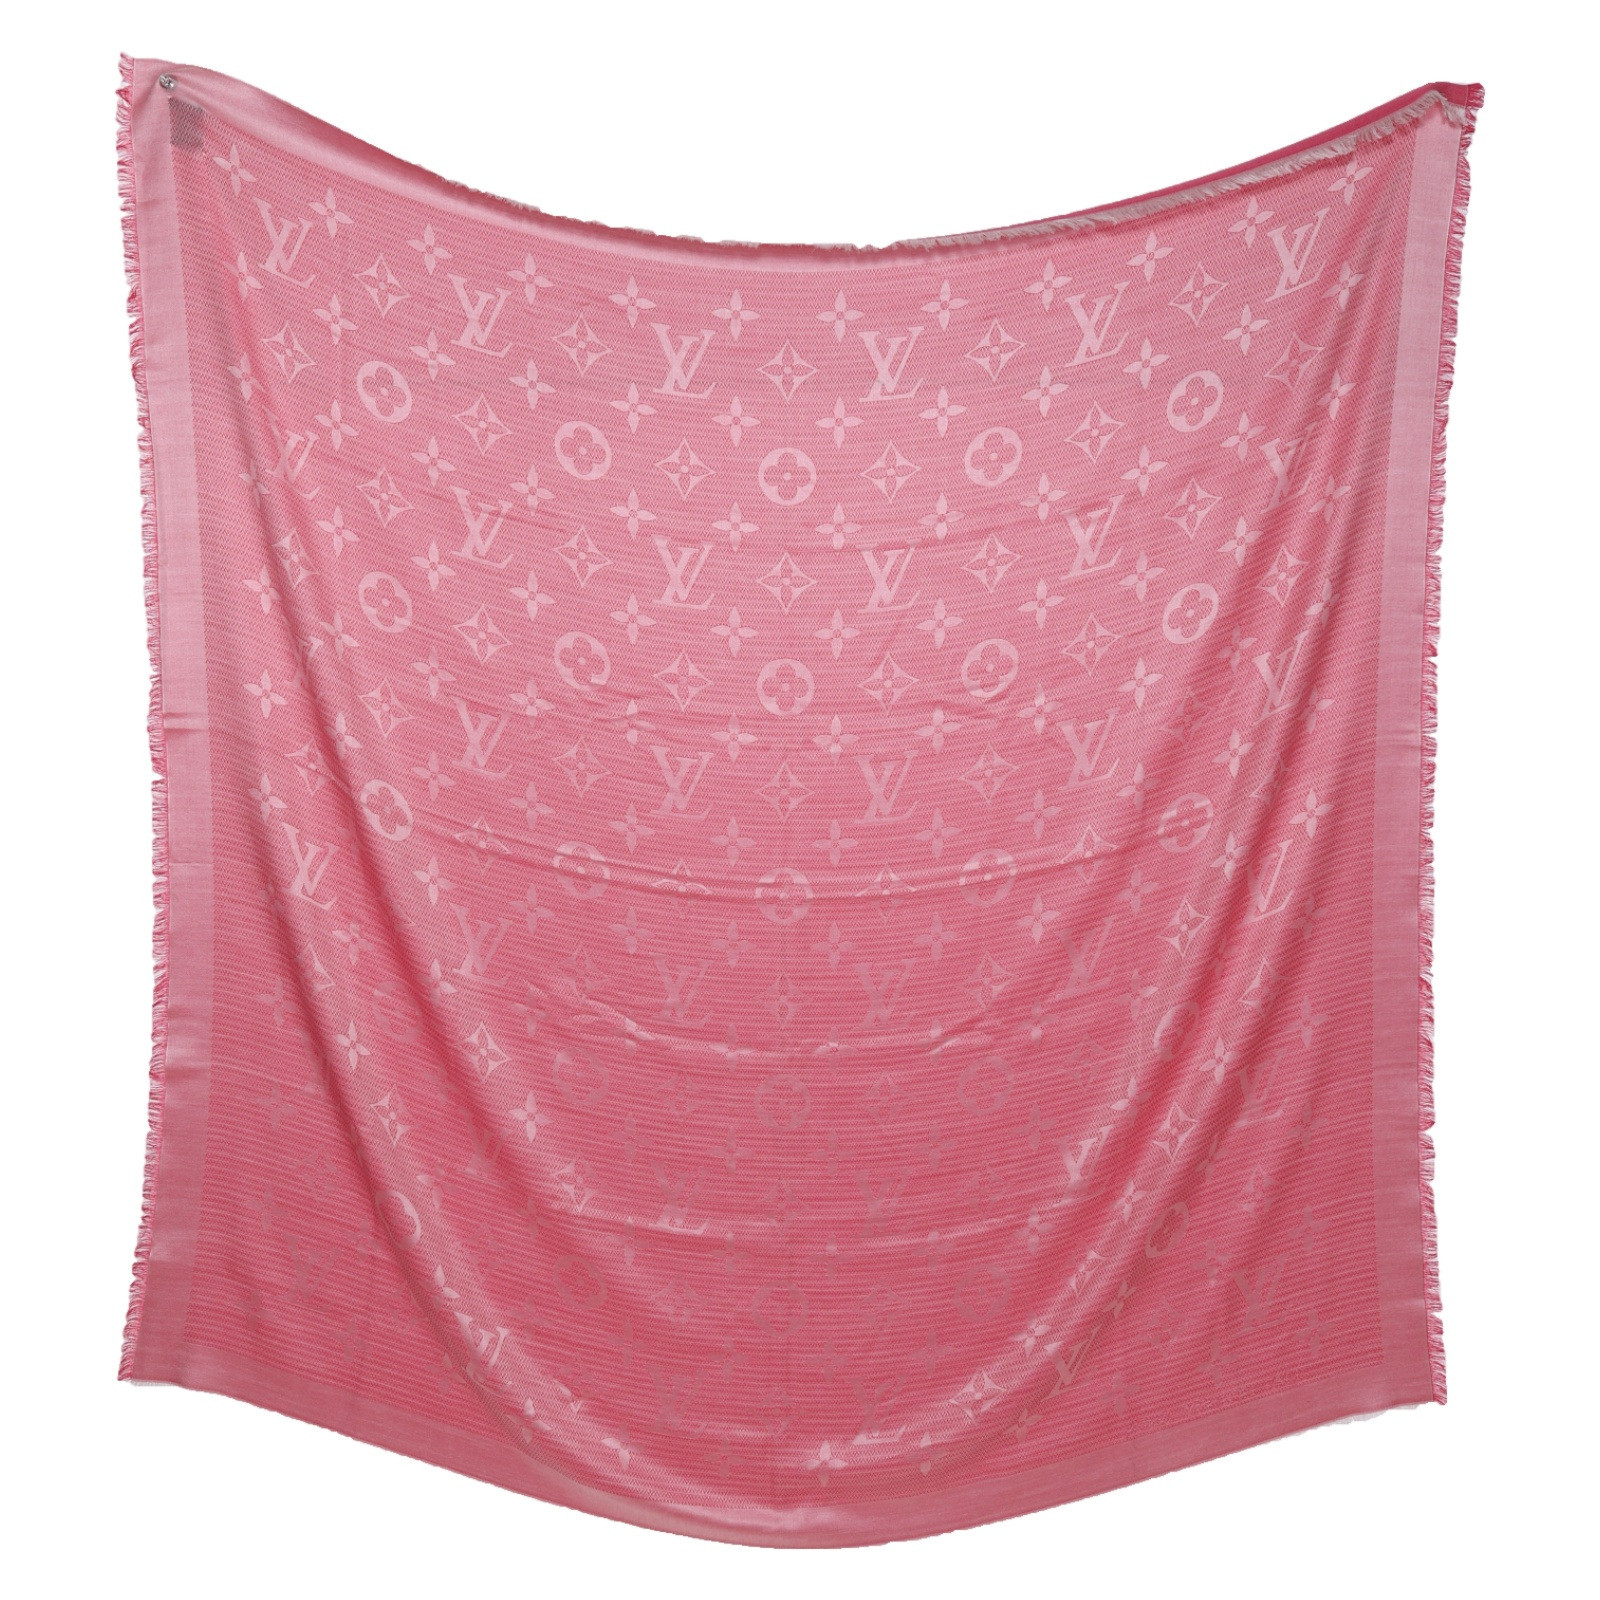 LOUIS VUITTON Women's Schal/Tuch in Rosa / Pink